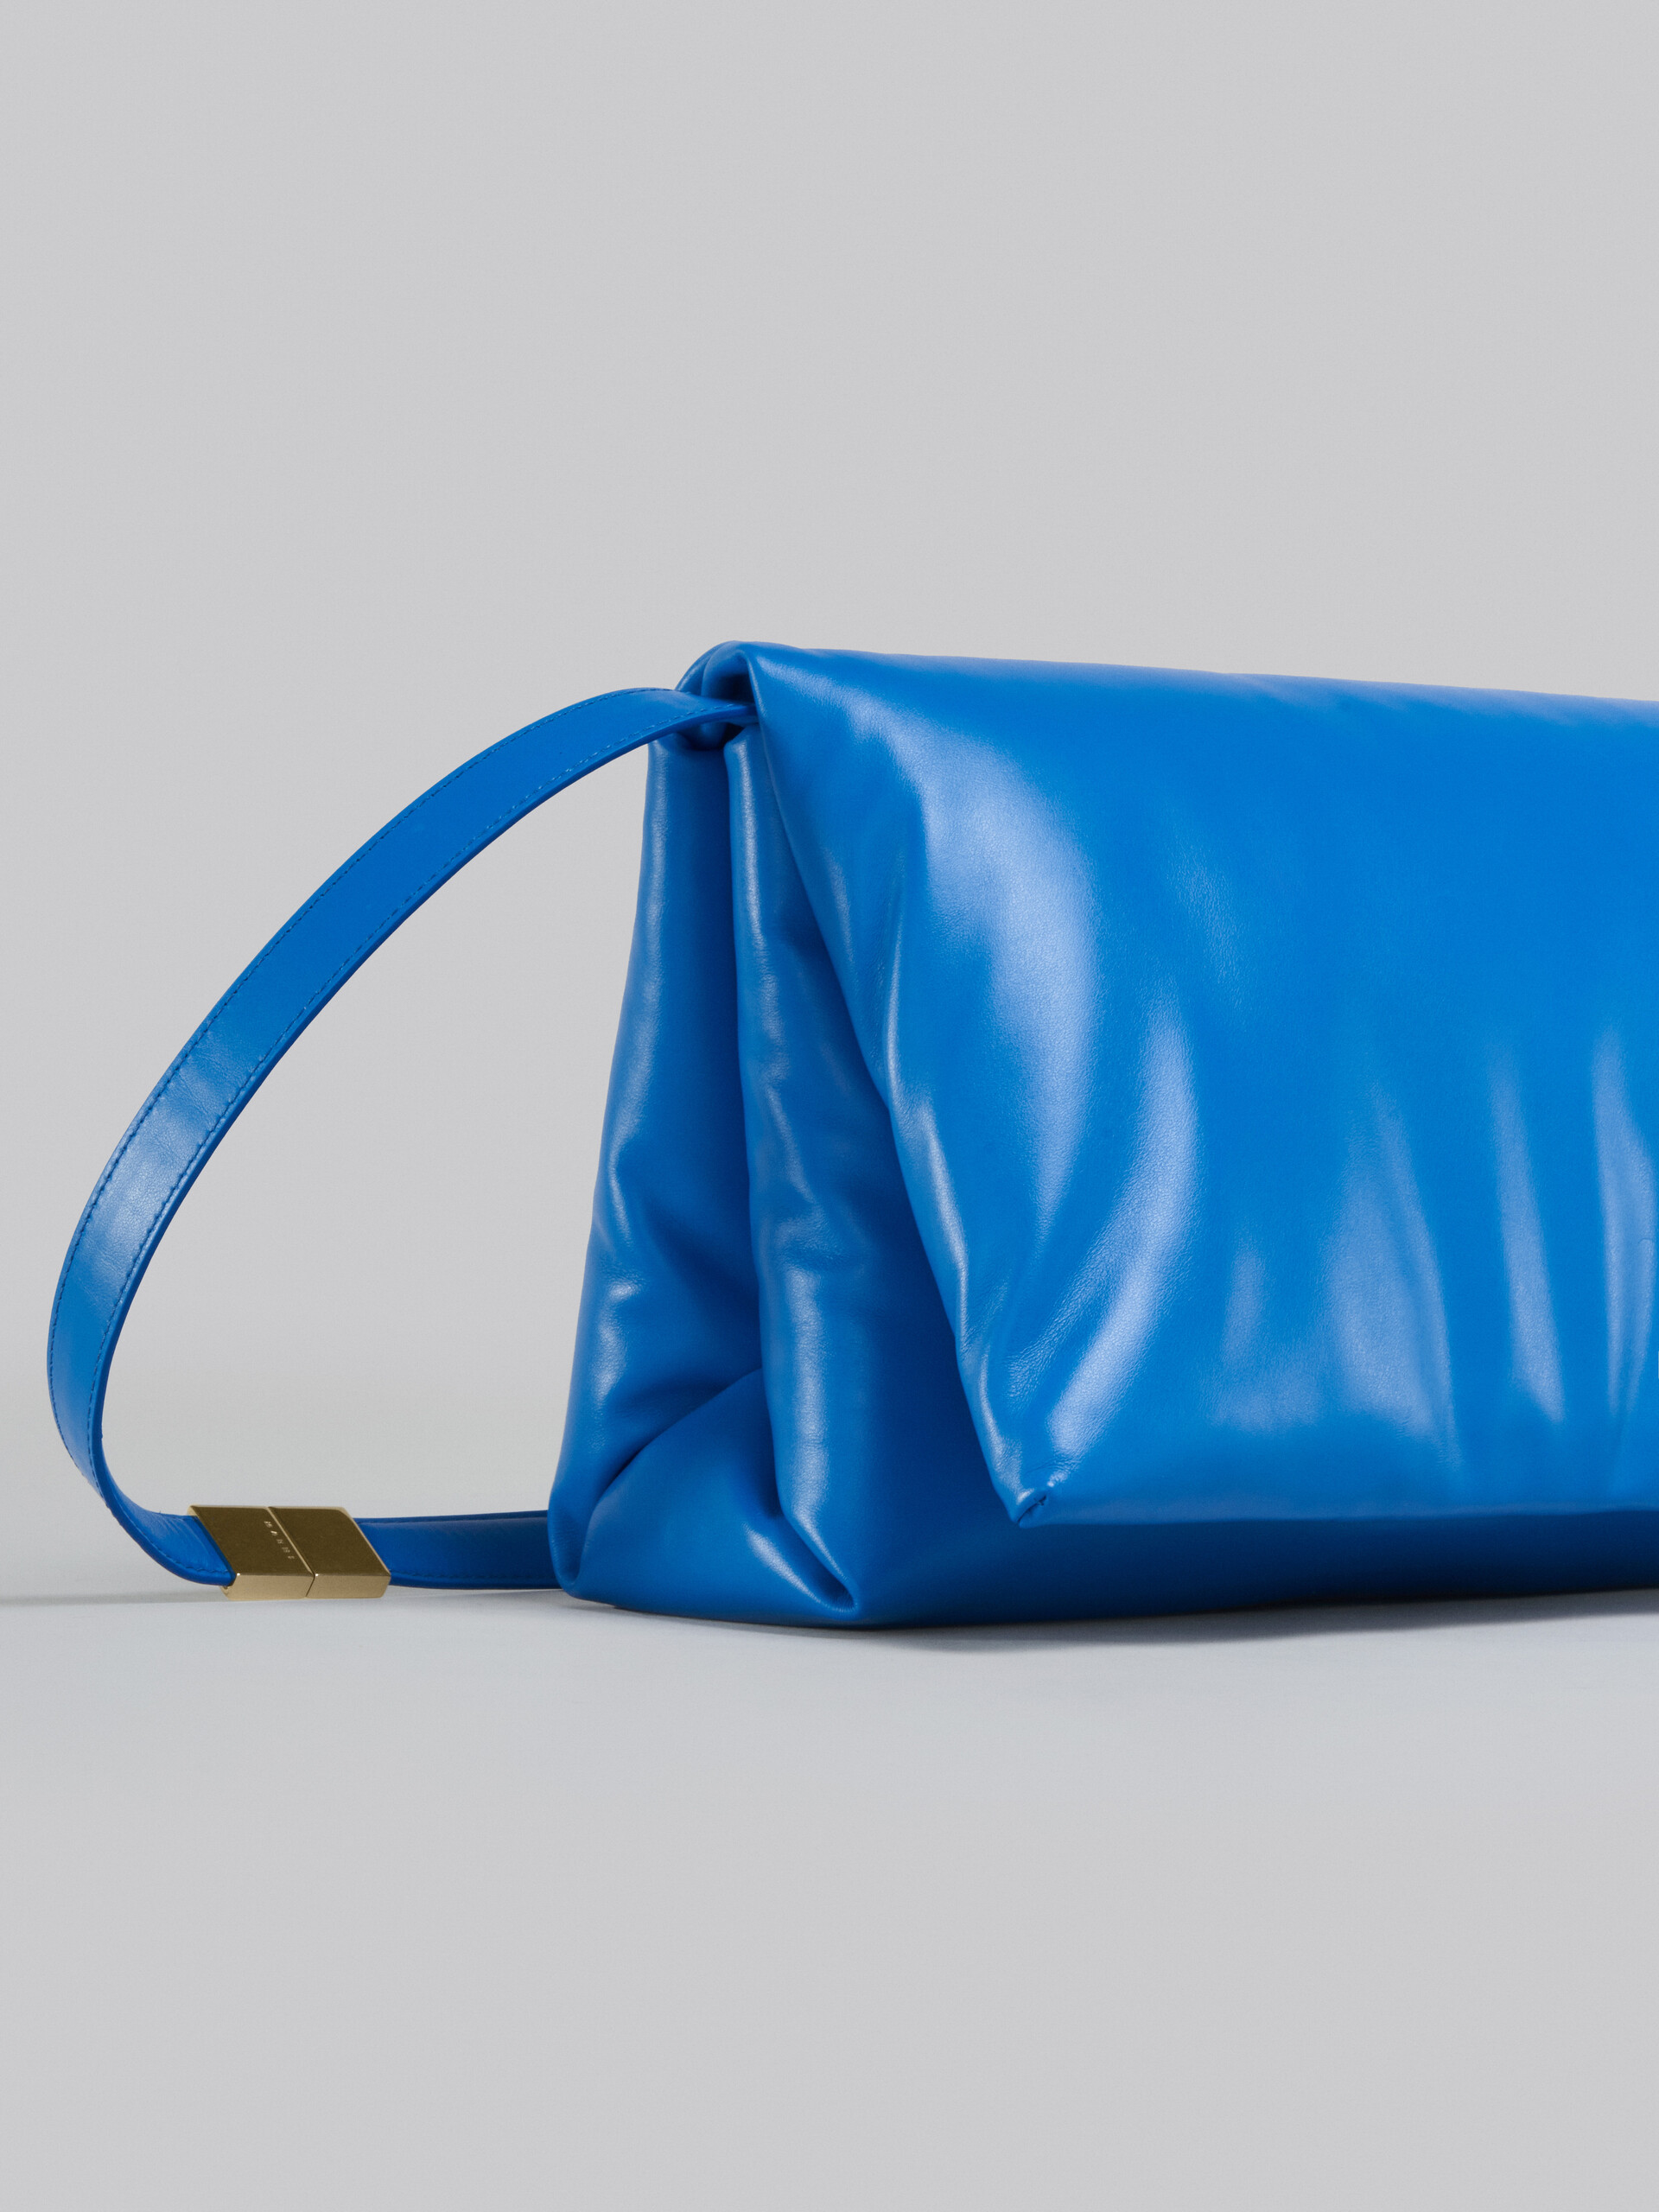 Large blue calsfkin Prisma bag - Shoulder Bag - Image 5